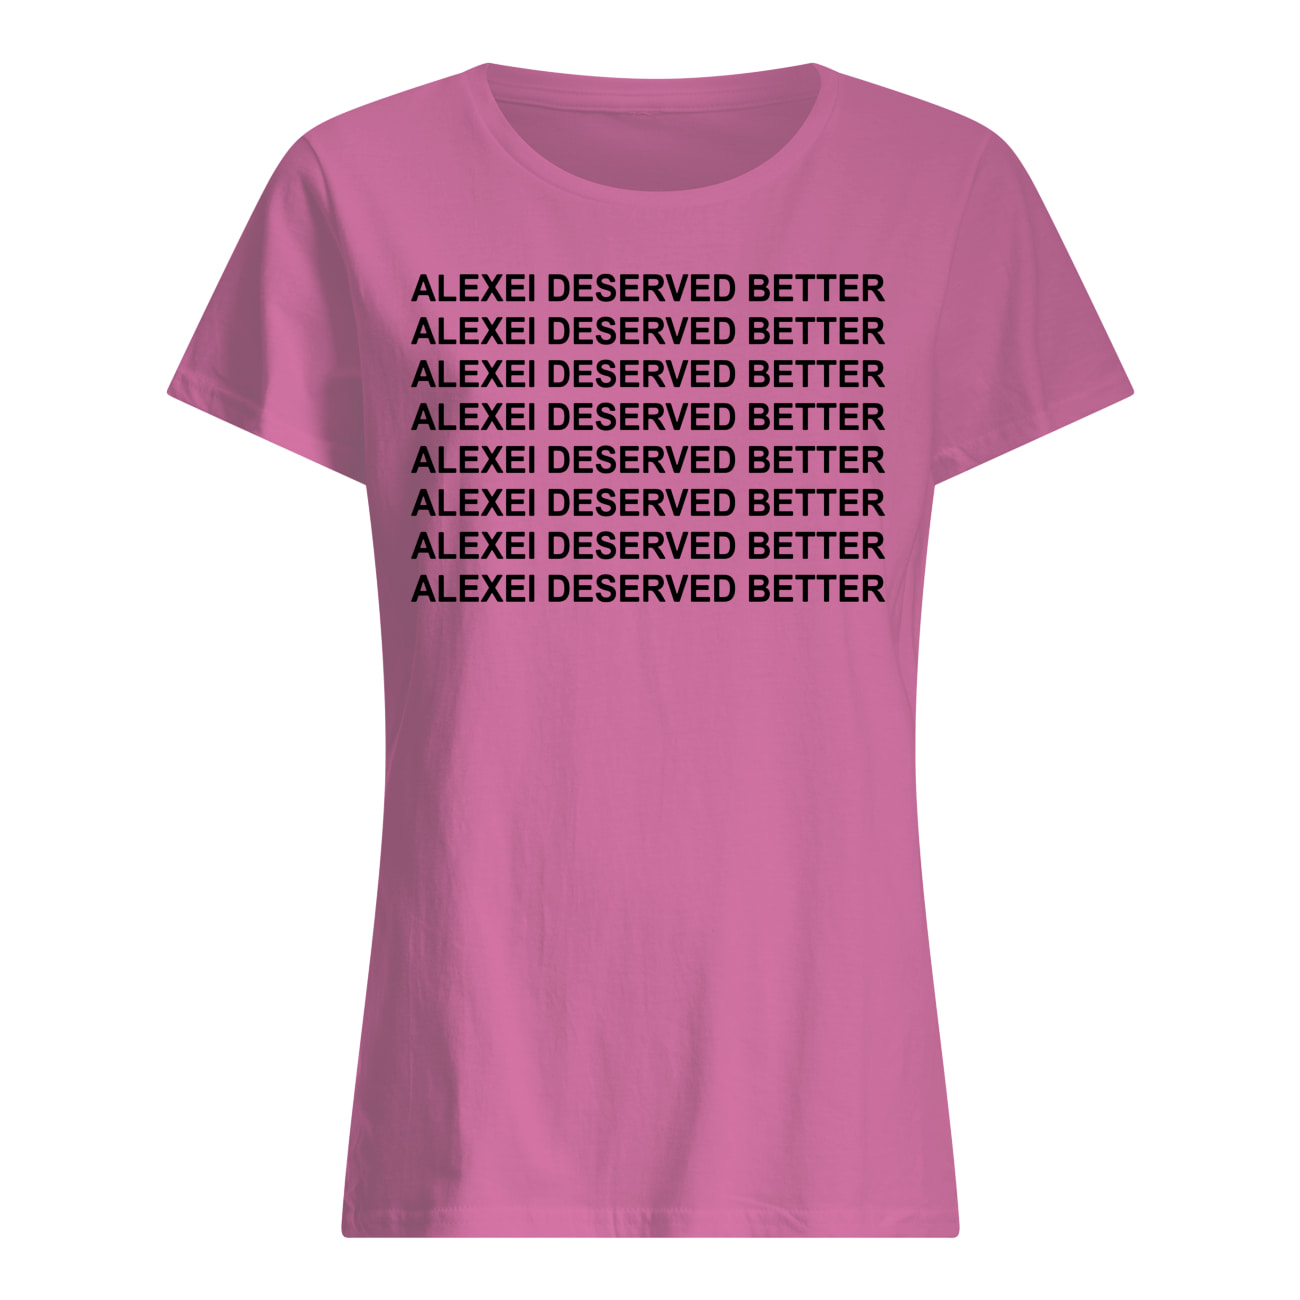 Alexei deserved better stranger things womens shirt